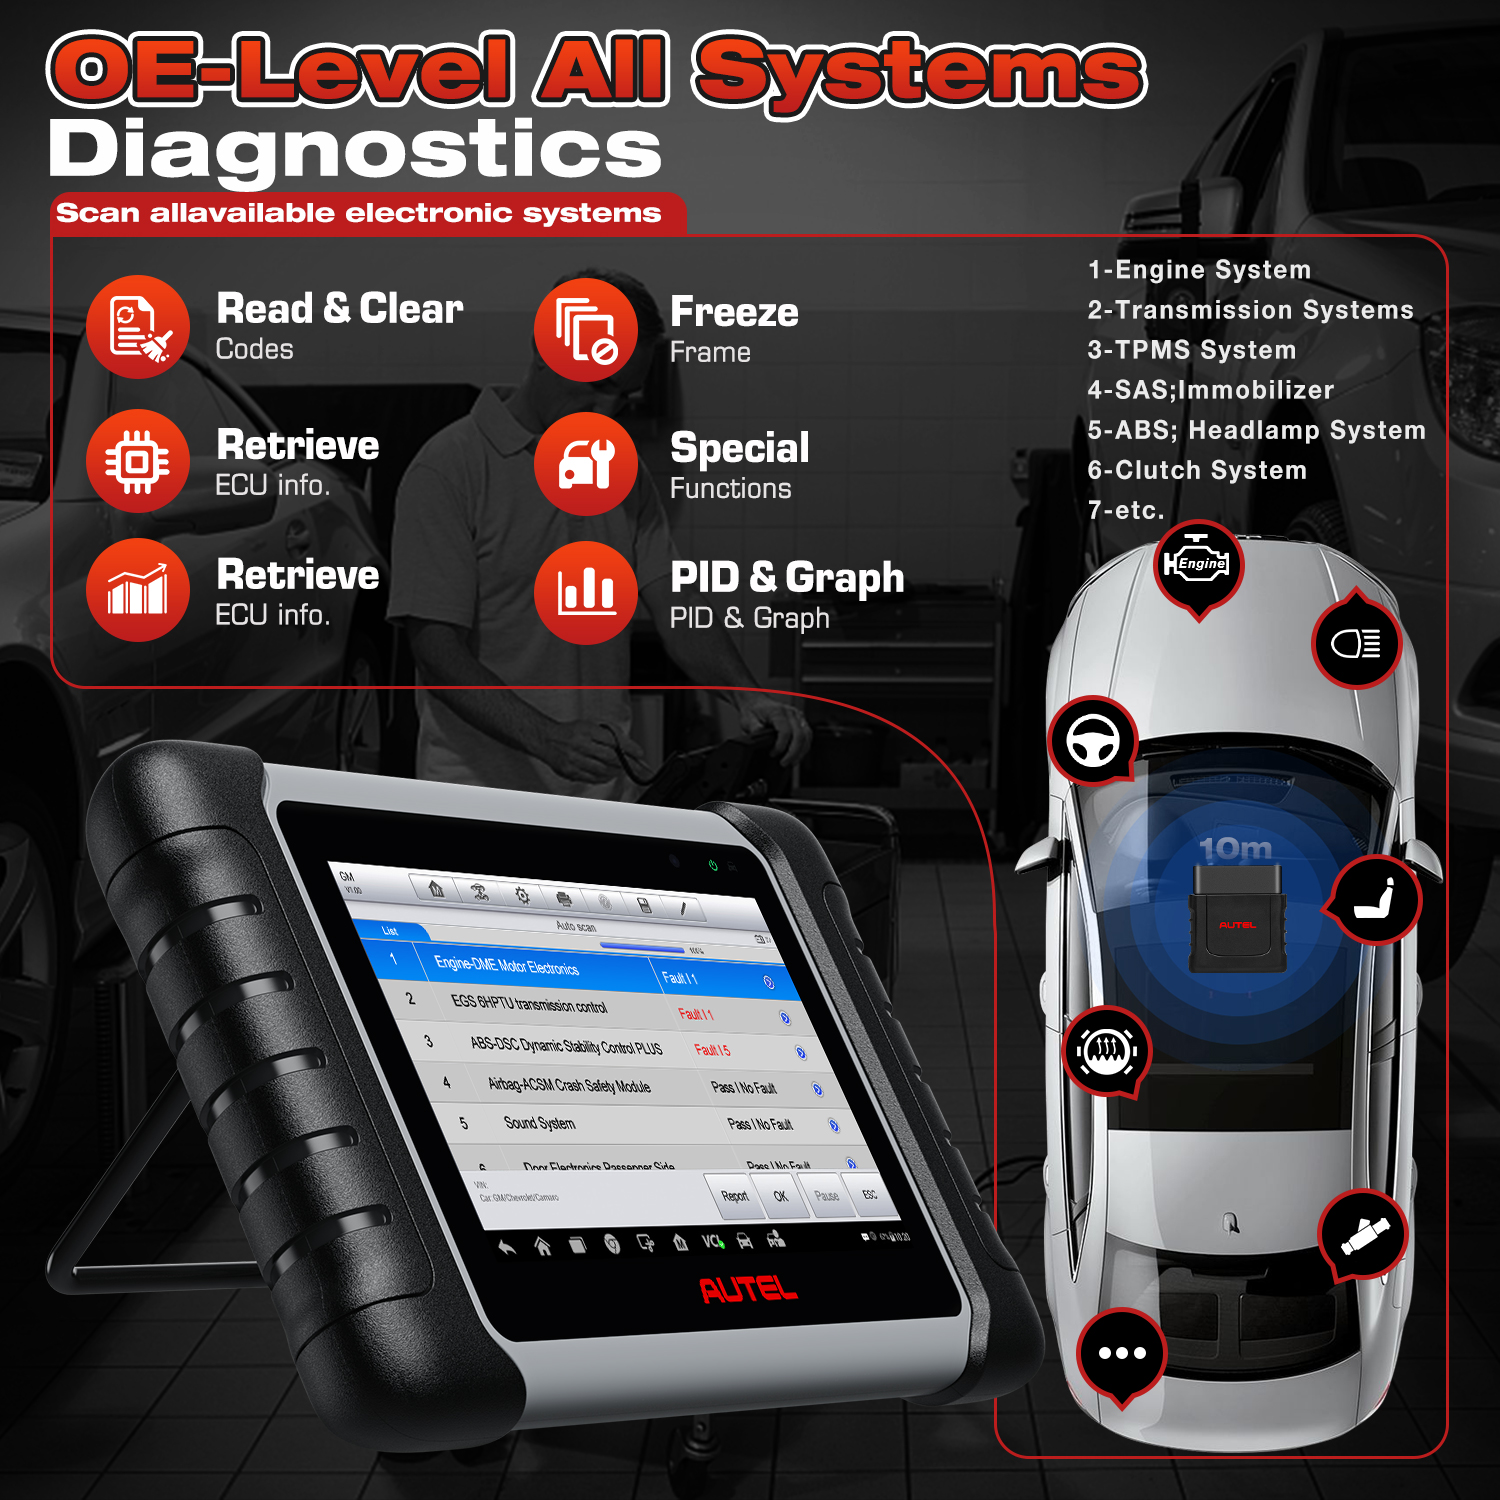 Autel MaxiCOM MK808BT PRO Car Bi-directional Diagnostic Tools OBD2 Scanner Code Reader All System Diagnosis PK MX808S MK808S